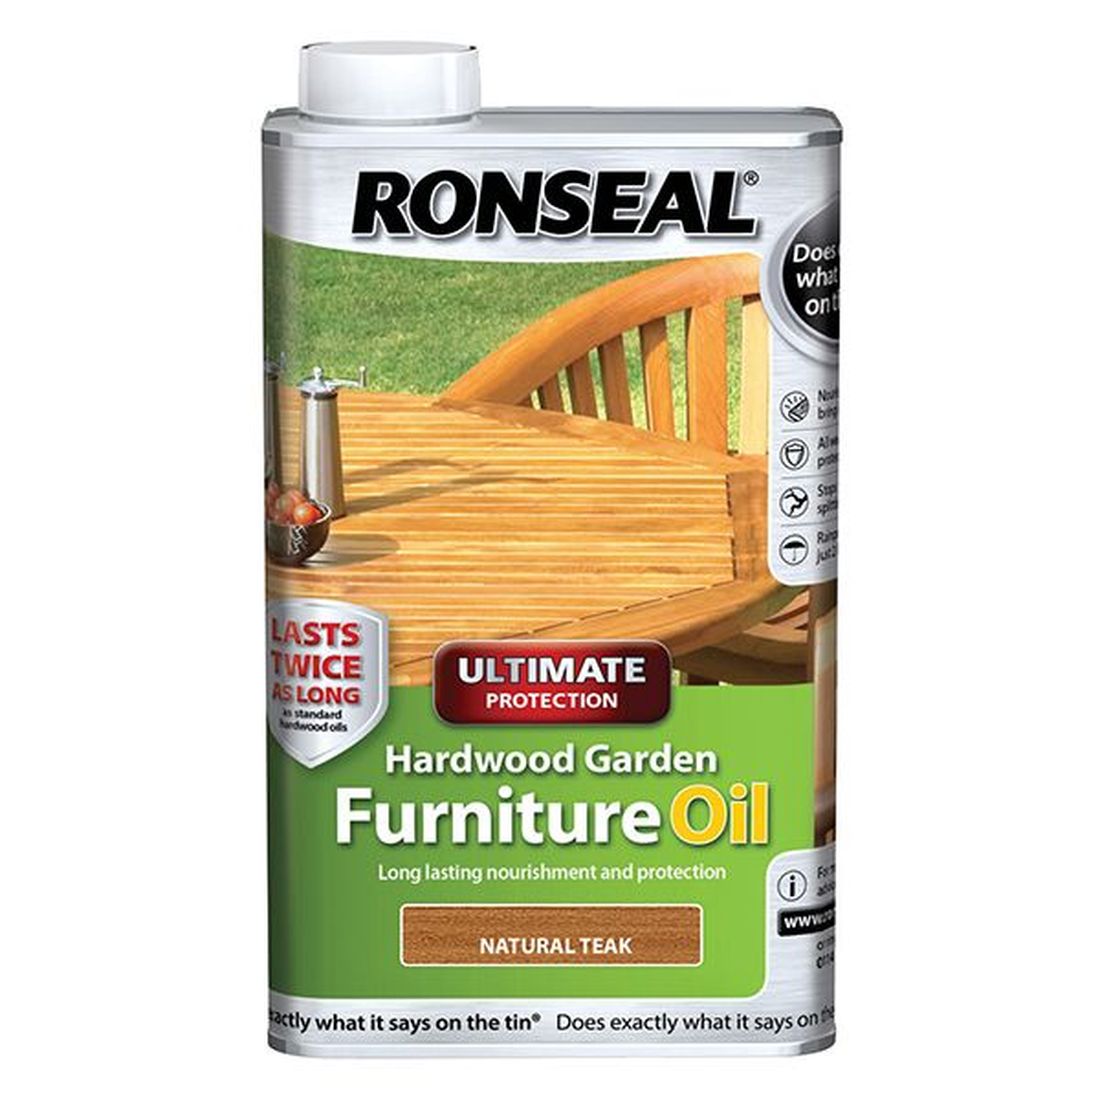 Ronseal Ultimate Protection Hardwood Garden Furniture Oil Natural Teak 1 litre          